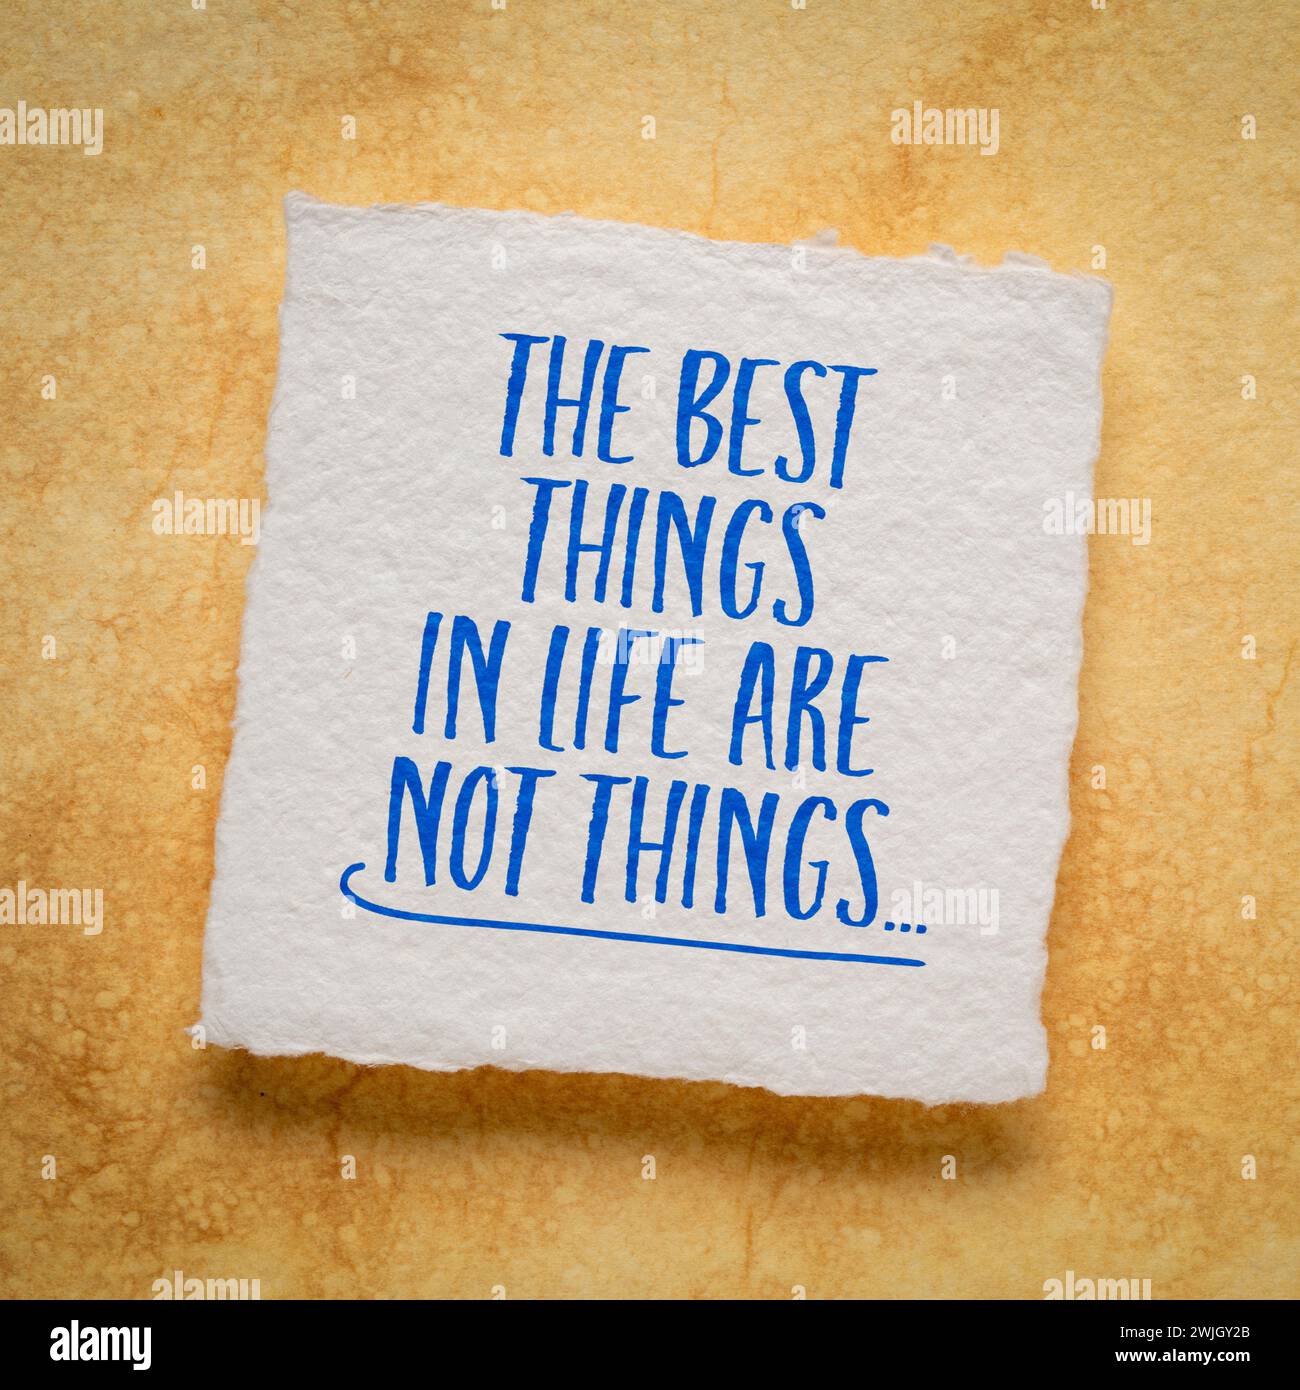 Le cose migliori della vita non sono cose - parole di saggezza ispiratrice su carta d'arte Foto Stock